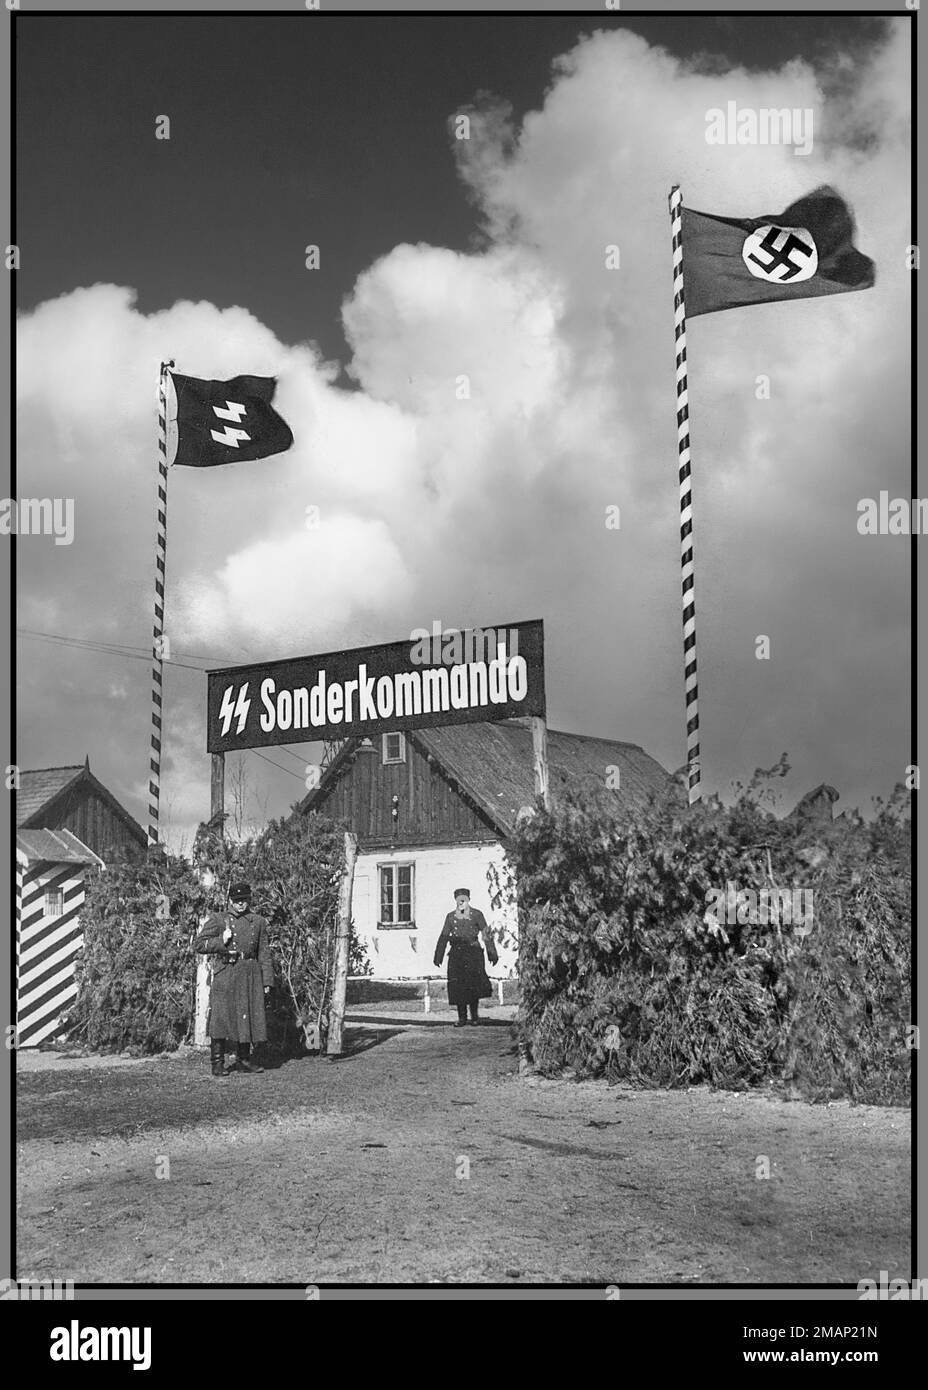 CAMP D'EXTERMINATION DE SOBIBOR ENTRÉE SONDERKOMMANDO 1942-43 porte d'entrée du camp de la mort nazi Sobibor en Pologne occupée par l'Allemagne nazie. Les drapeaux nazis Waffen SS et Swastika volent au-dessus. Sonderkommandos étaient des unités de travail composées de prisonniers allemands du camp de la mort nazi. Ils étaient composés de prisonniers, habituellement des juifs, qui étaient forcés, sous la menace de leur propre mort, d'aider à l'élimination des victimes de chambre à gaz pendant l'Holocauste. Le camp de décès Sonderkommandos, qui était toujours détenu, n'était pas lié aux SS-Sonderkommandos, qui étaient des unités ad hoc constituées de membres de divers bureaux SS Banque D'Images